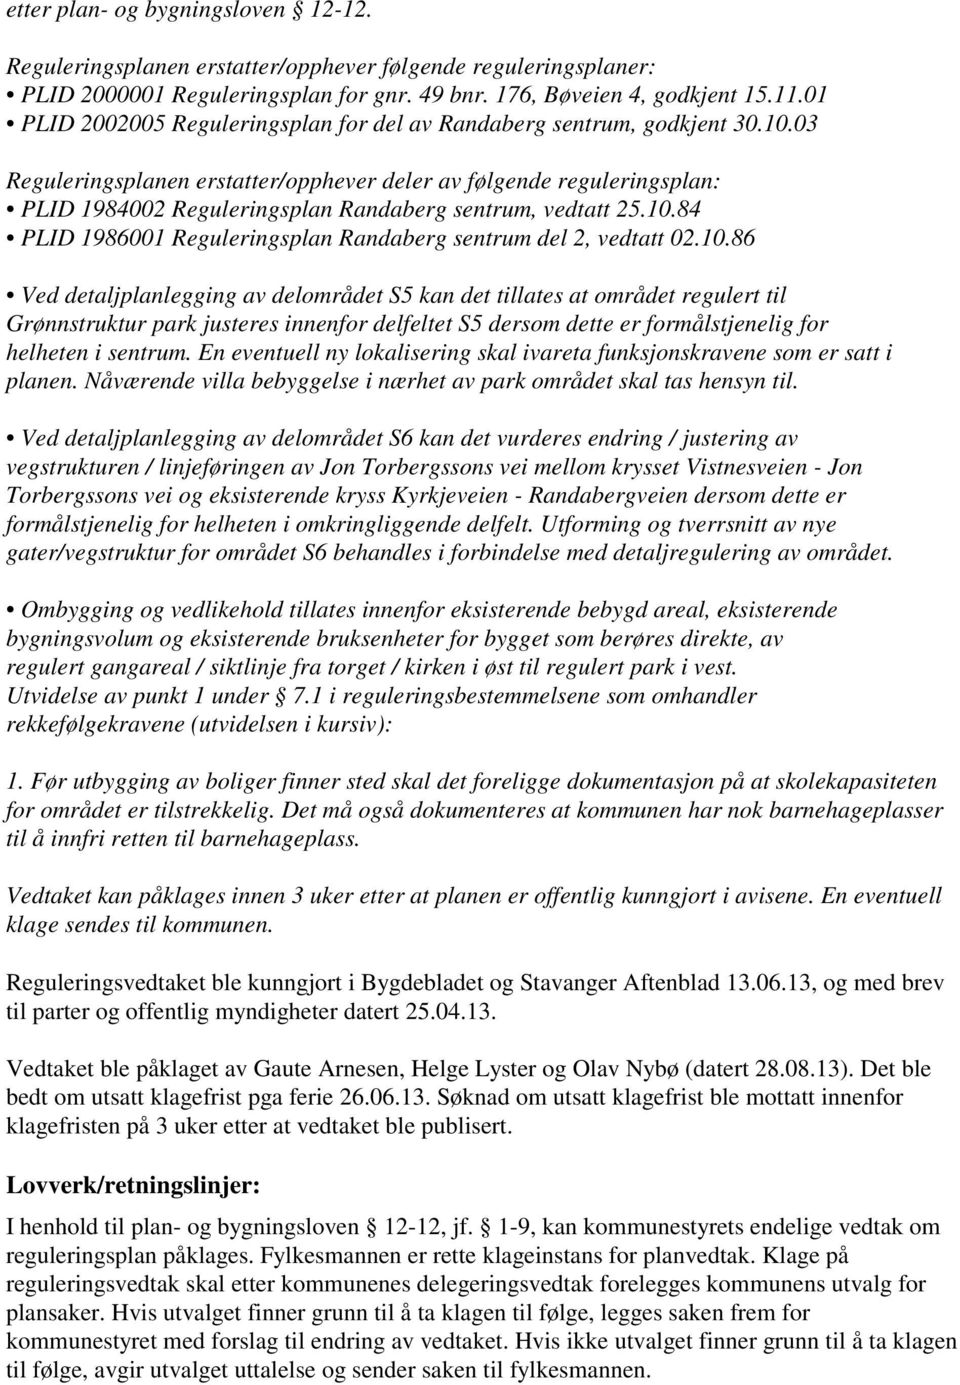 03 Reguleringsplanen erstatter/opphever deler av følgende reguleringsplan: PLID 1984002 Reguleringsplan Randaberg sentrum, vedtatt 25.10.